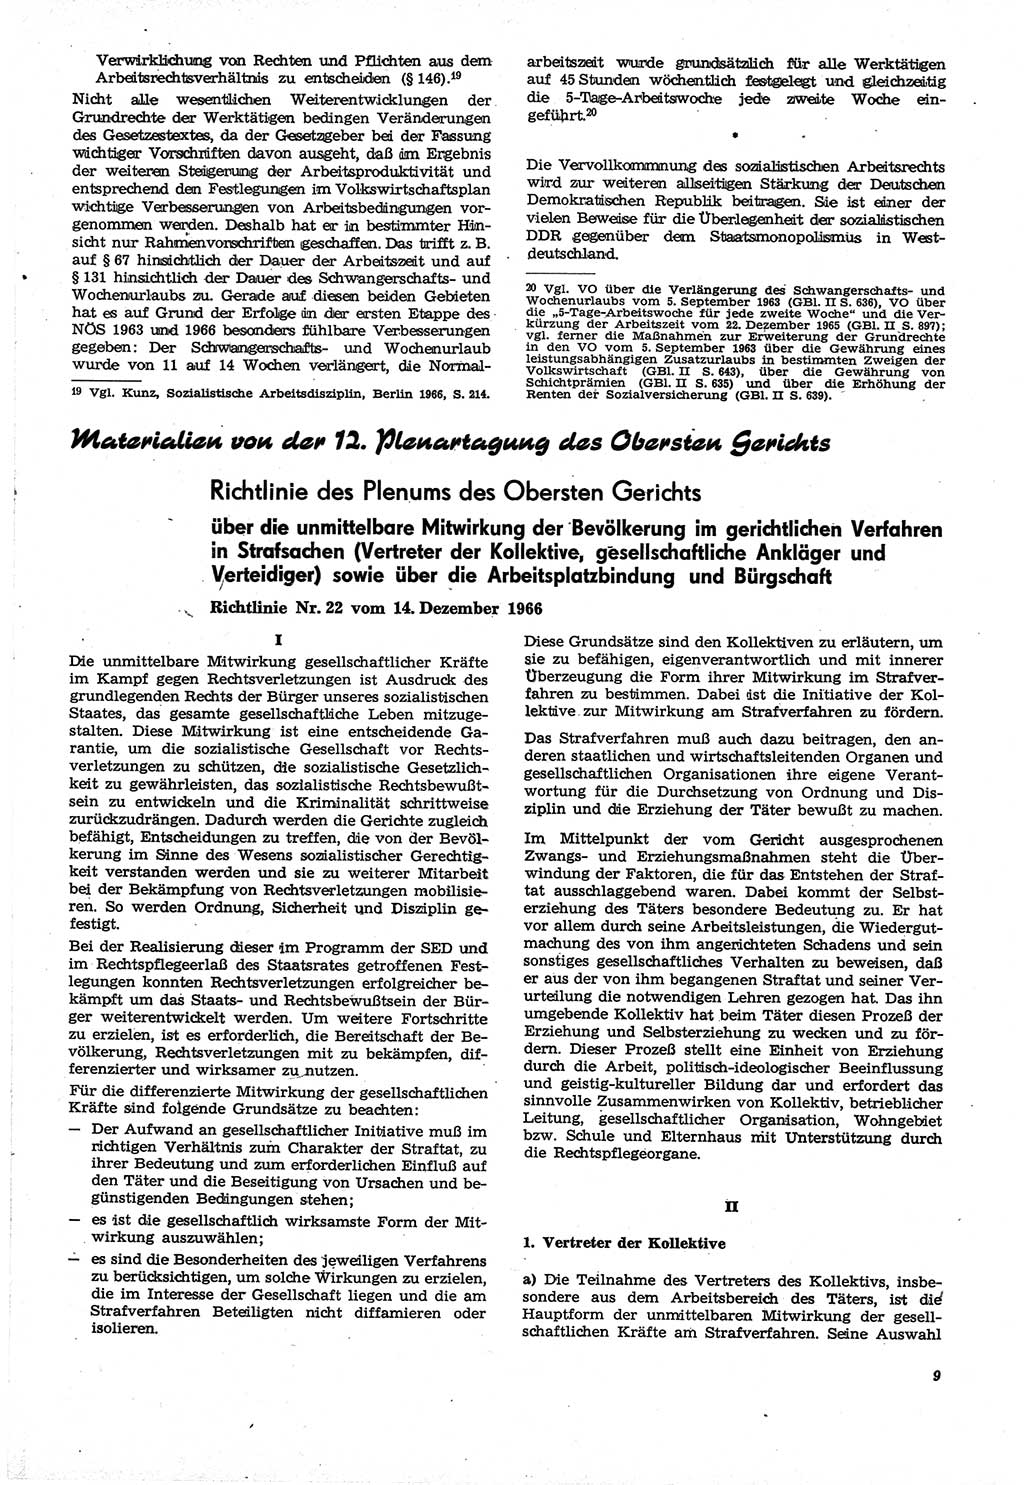 Neue Justiz (NJ), Zeitschrift für Recht und Rechtswissenschaft [Deutsche Demokratische Republik (DDR)], 21. Jahrgang 1967, Seite 9 (NJ DDR 1967, S. 9)